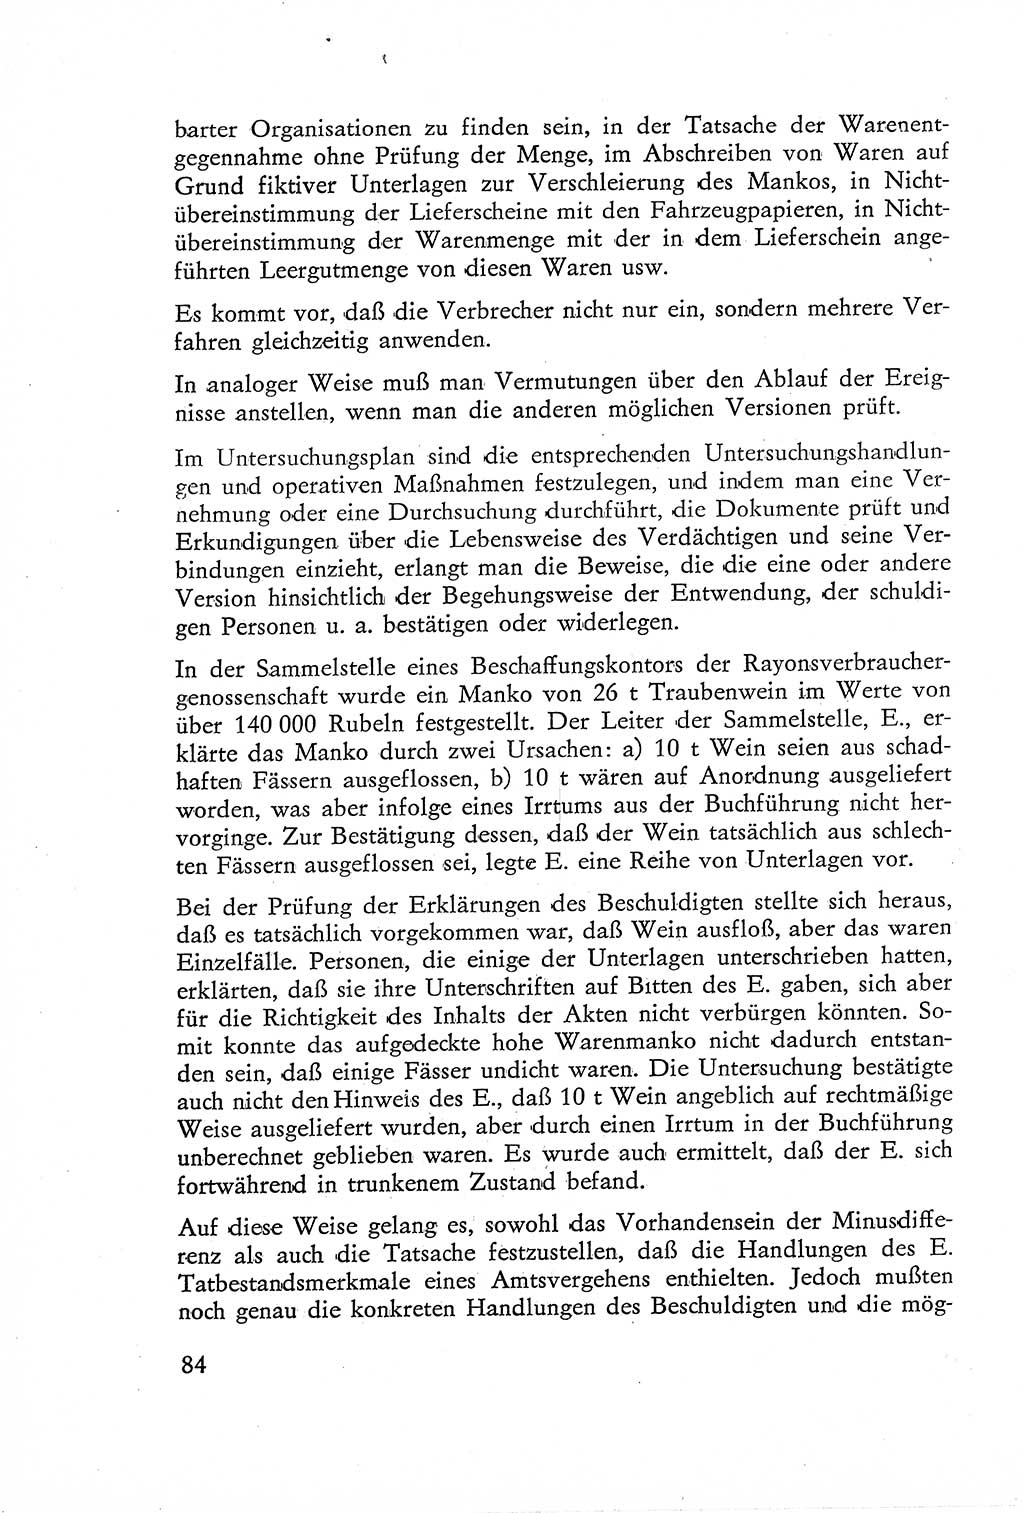 Die Untersuchung einzelner Verbrechensarten [Deutsche Demokratische Republik (DDR)] 1960, Seite 84 (Unters. Verbr.-Art. DDR 1960, S. 84)